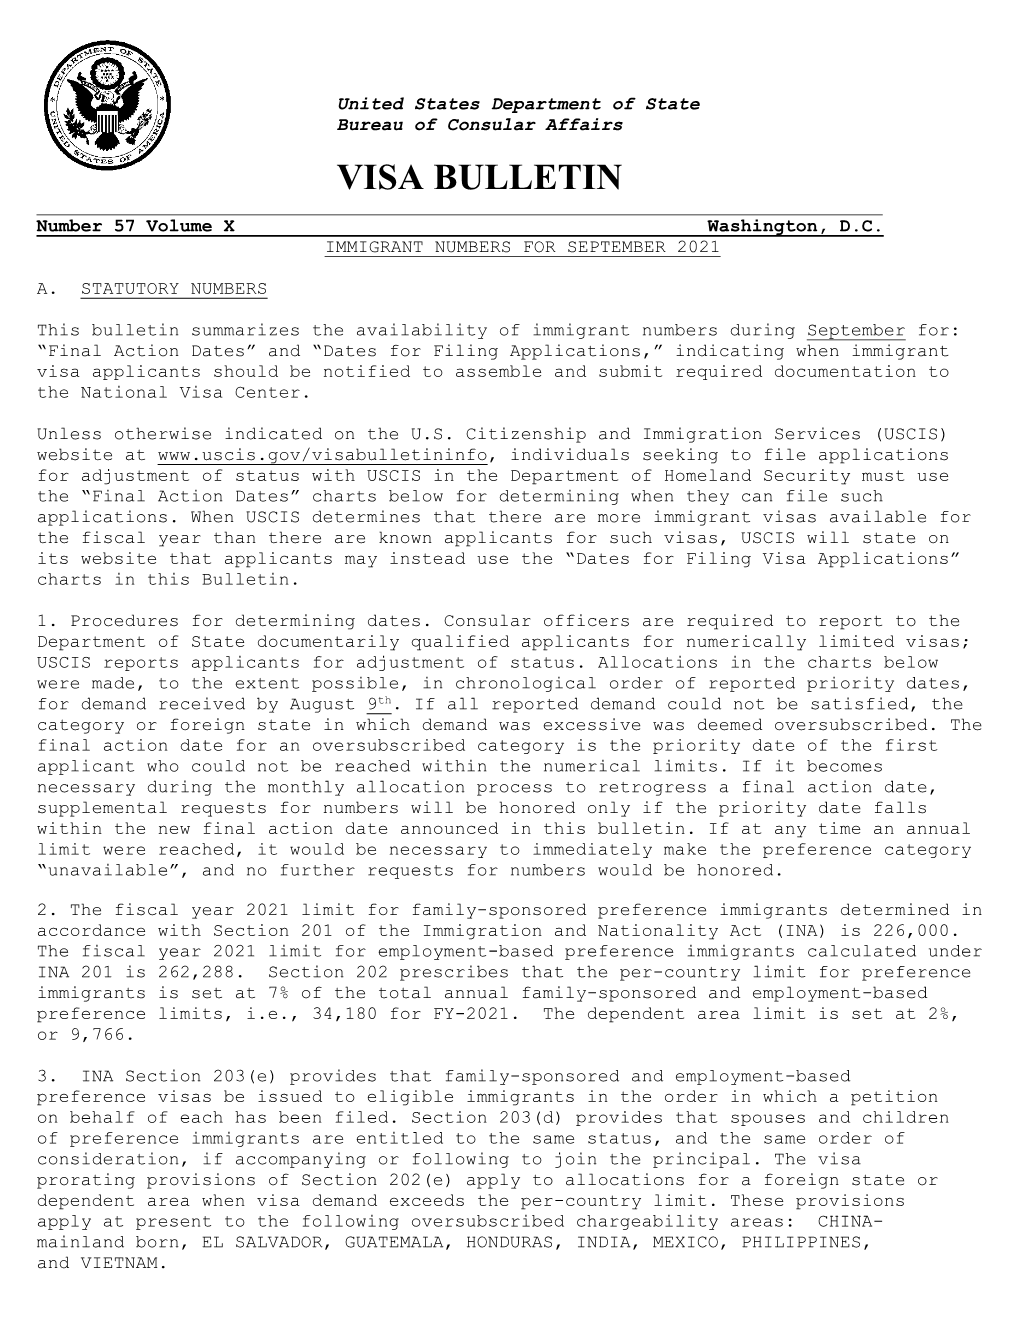 Visa Bulletin for September 2021